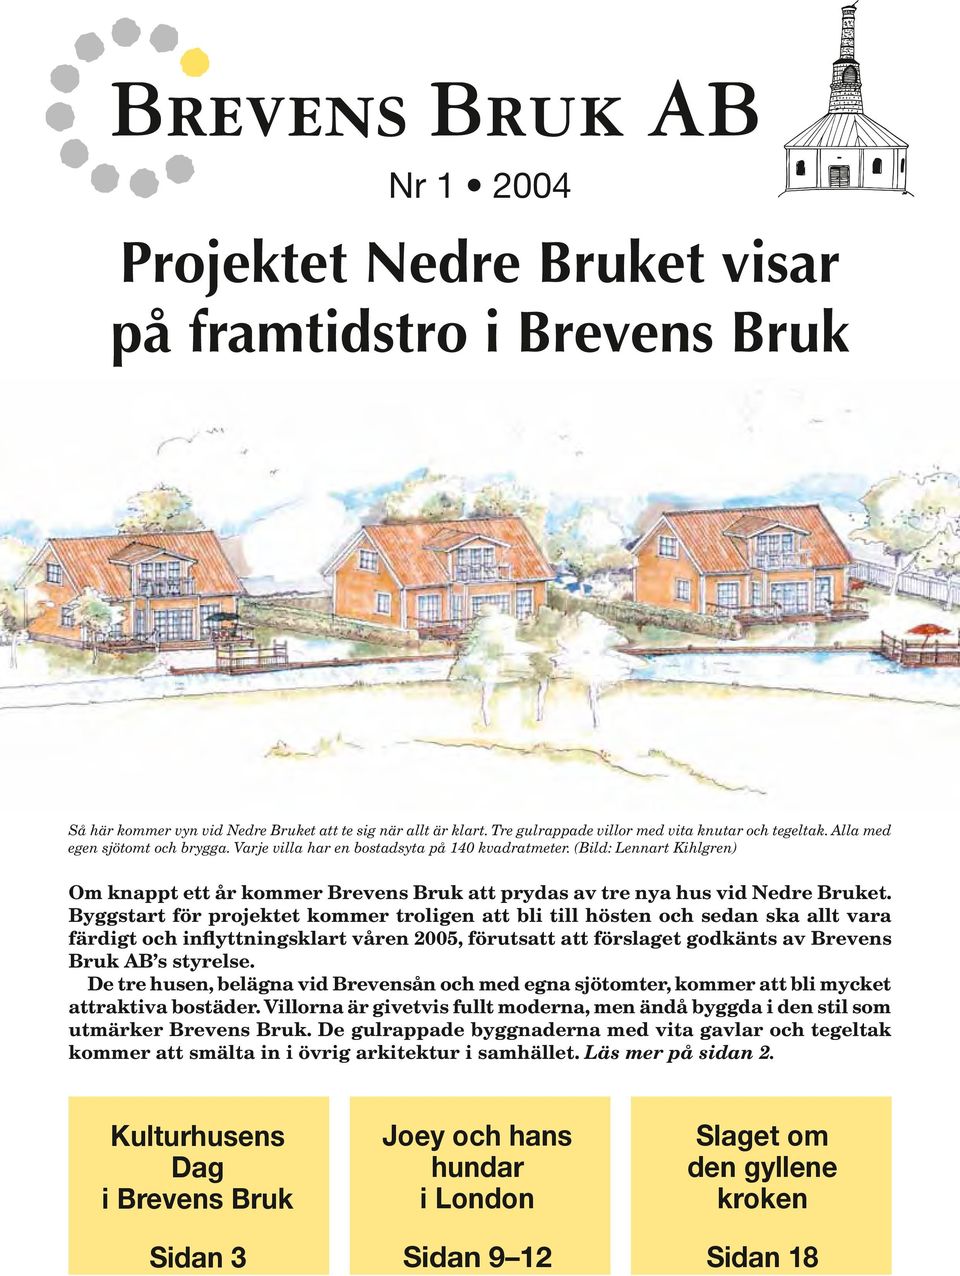 Byggstart för projektet kommer troligen att bli till hösten och sedan ska allt vara färdigt och inflyttningsklart våren 2005, förutsatt att förslaget godkänts av Brevens Bruk AB s styrelse.